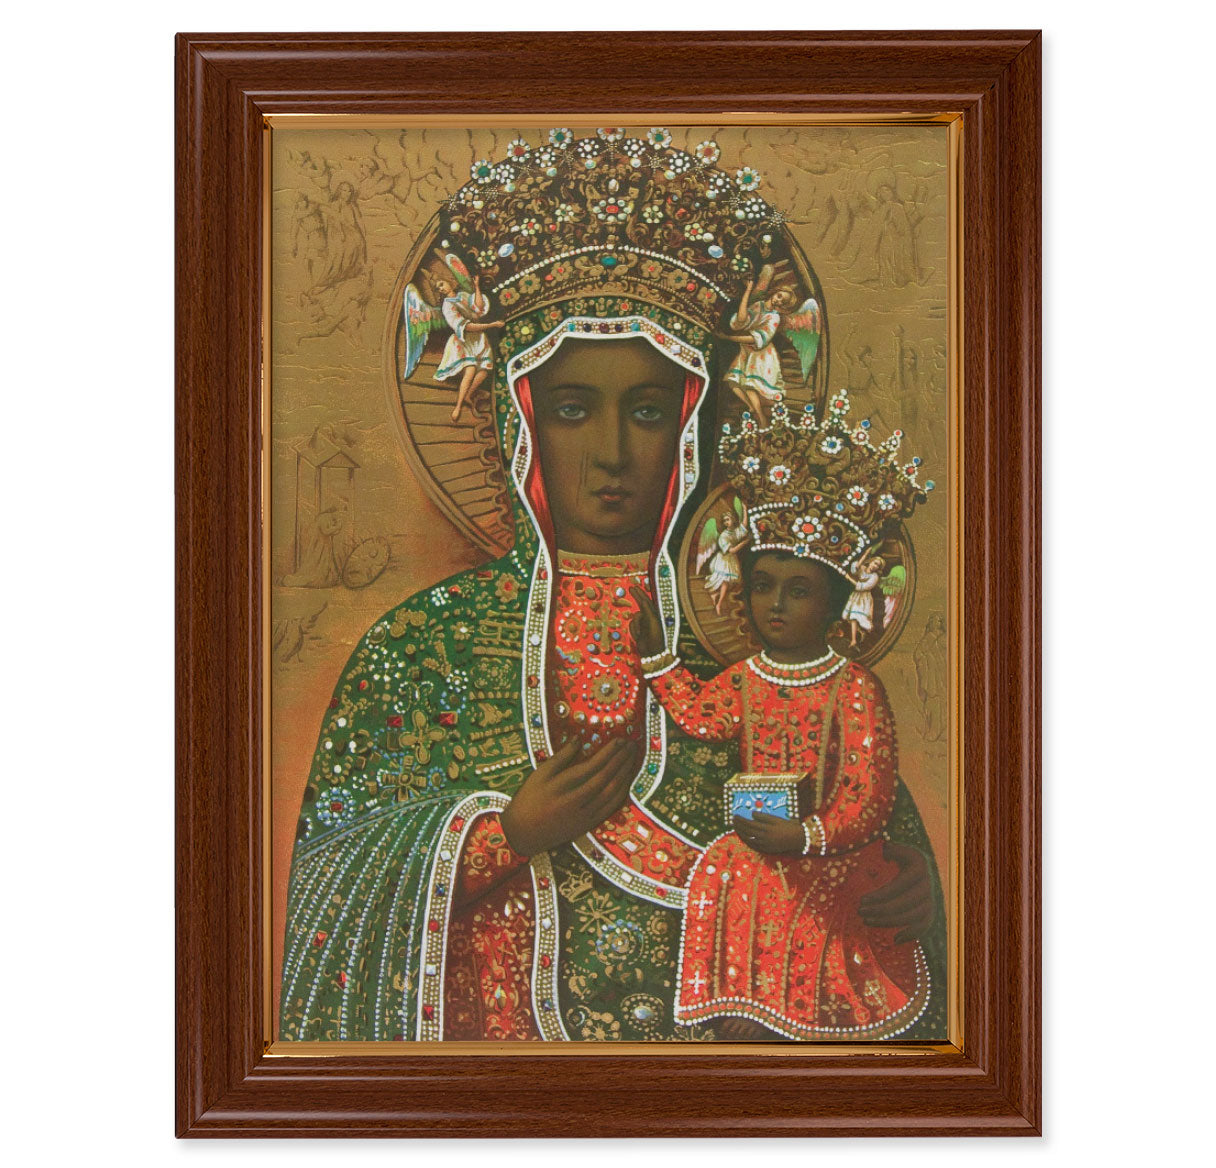 Our Lady of Czestochowa Walnut Finish Framed Art